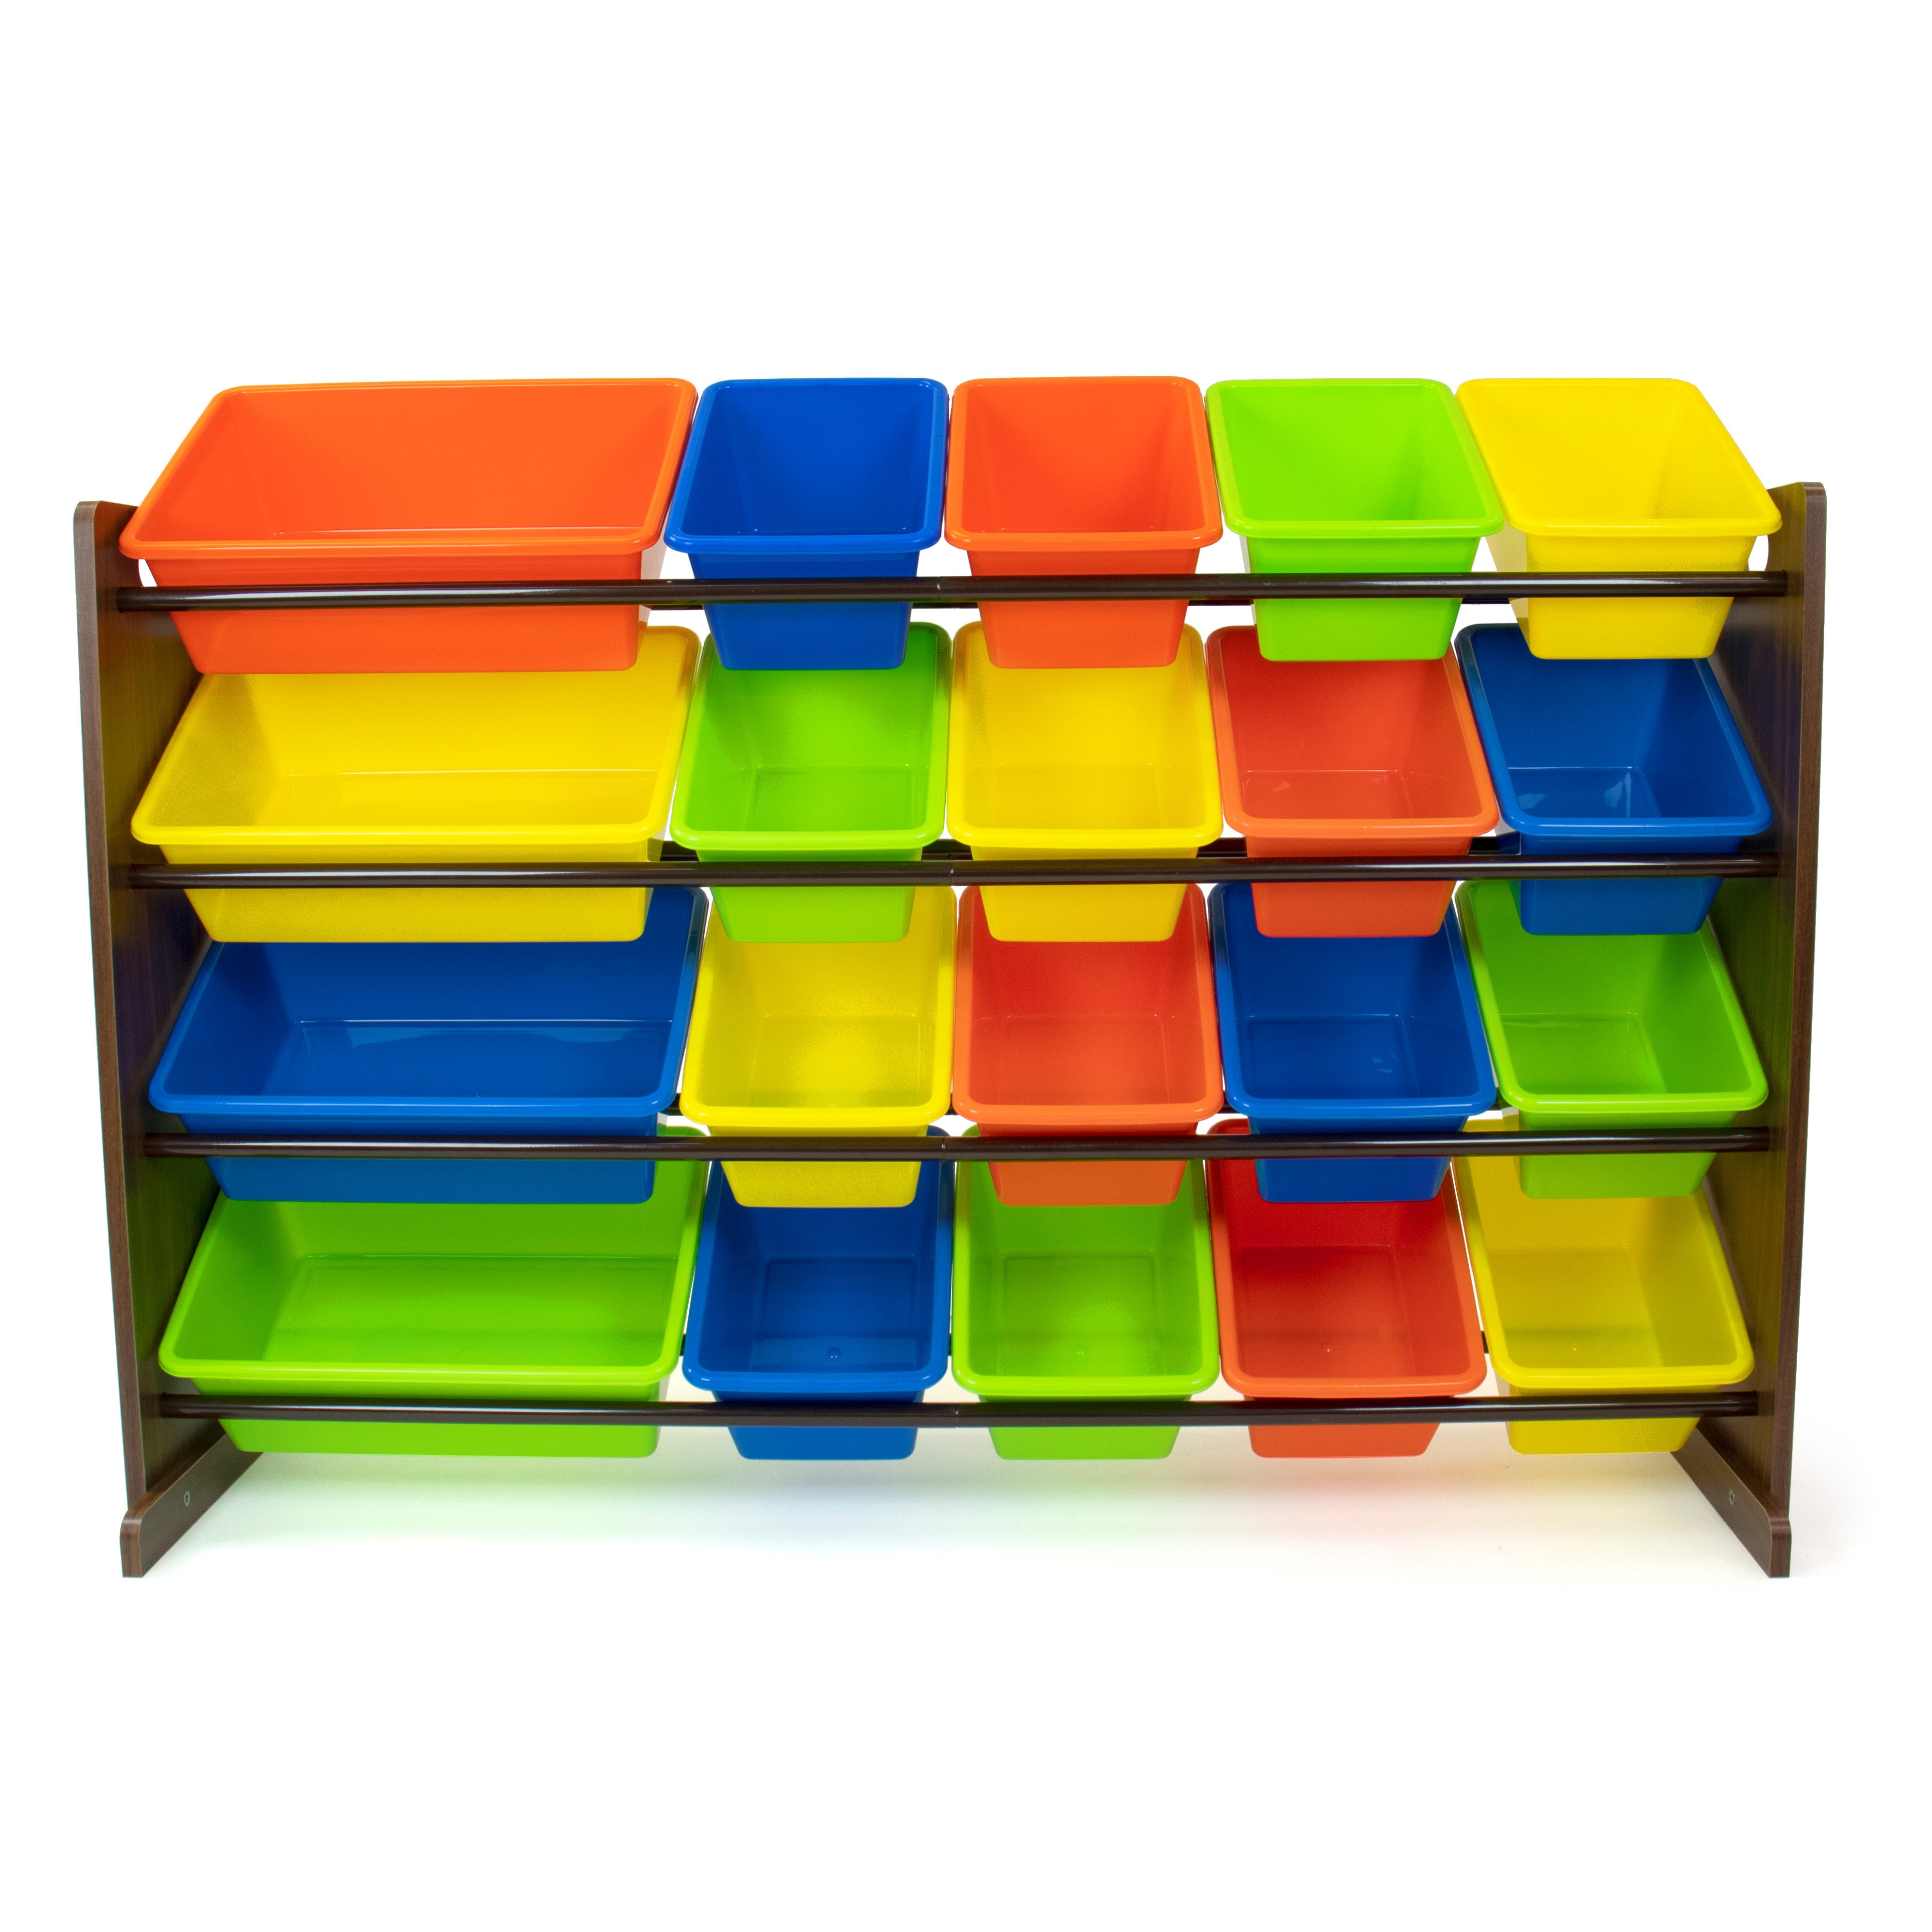 Chiviri4ta - ORGANIZADOR DE JUGUETES EXTRA GRANDE ¡Para tener todo muy bien  organizado! Organizador de juguetes práctico y fuerte. Estructura de madera  y 16 cubos organizadores plásticos, sólido y fácil de armar.